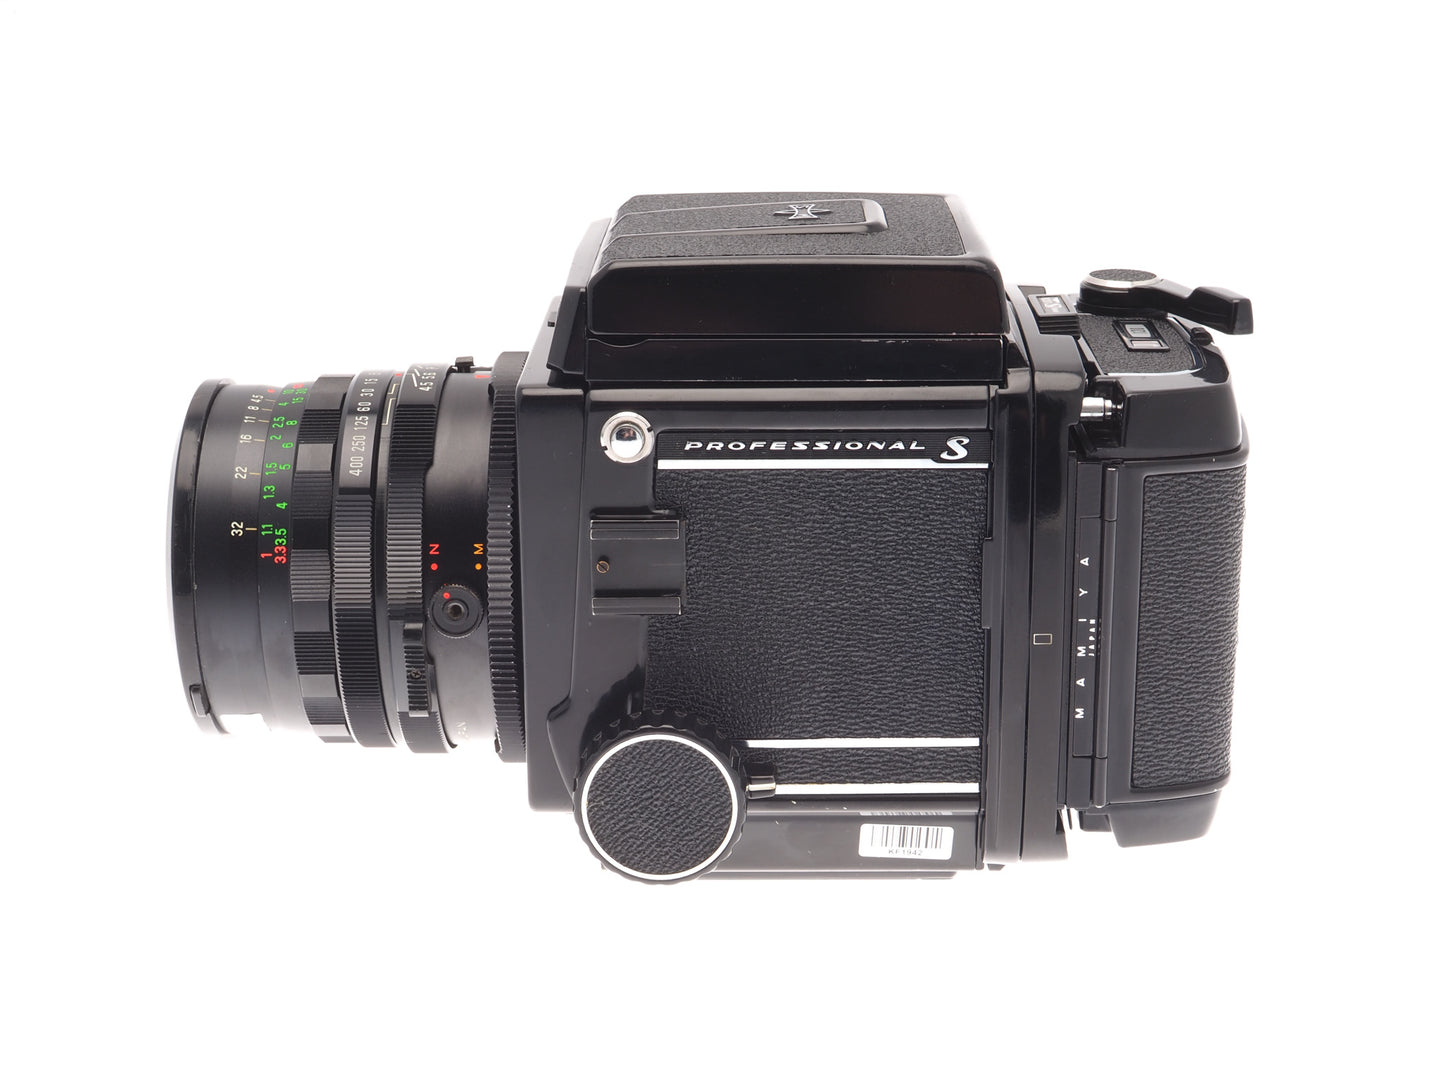 Mamiya RB67 Pro-S + 120 Pro-S 6x7 Film Back + 50mm f4.5 Sekor C